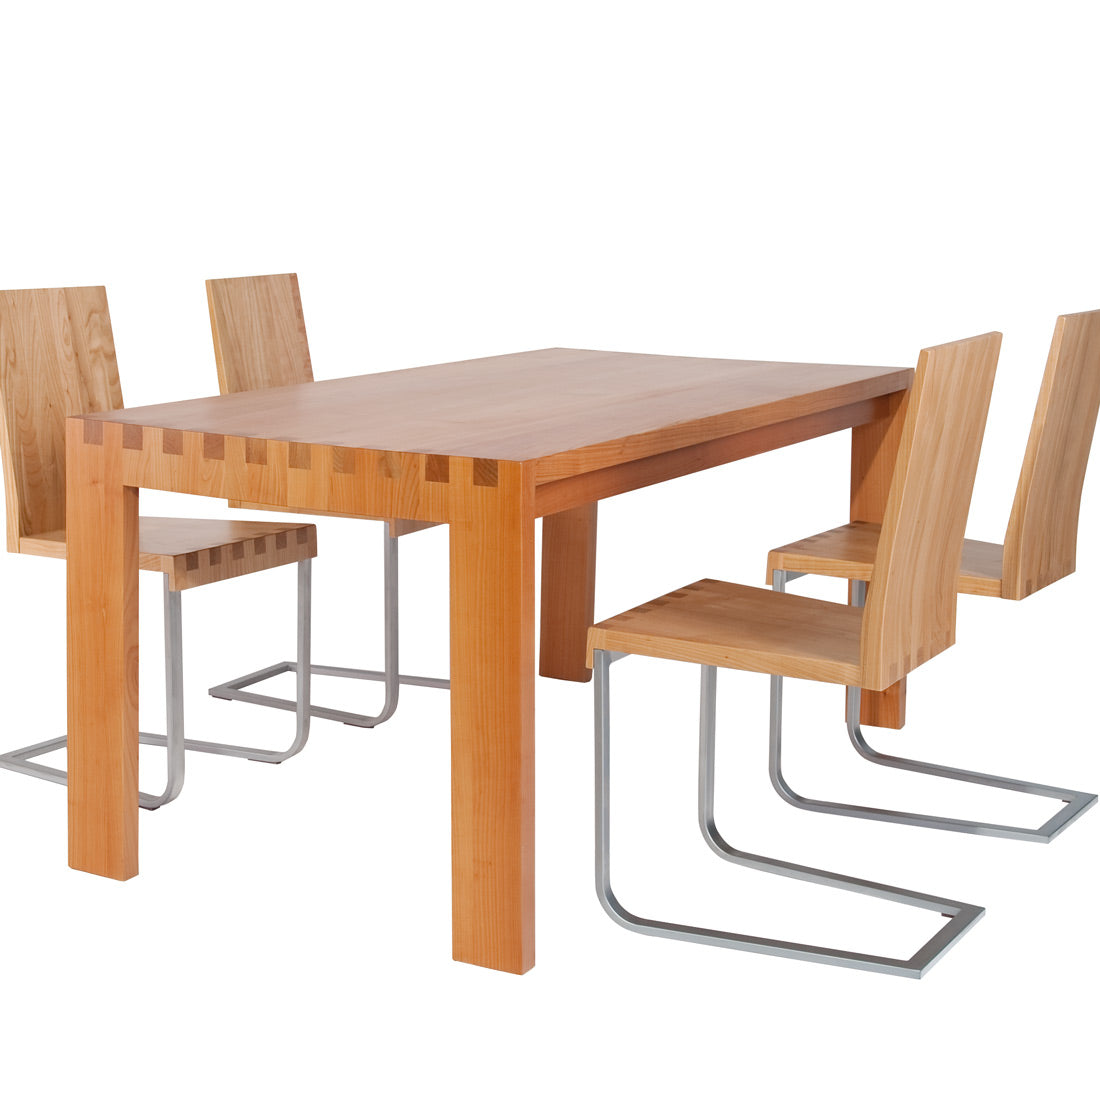 Tischgruppe 'ViSitable' | verschiedene Ausführungen | L 160 x B 84 x H 76 cm | massive Kirsche lackiert | Made in Südtirol